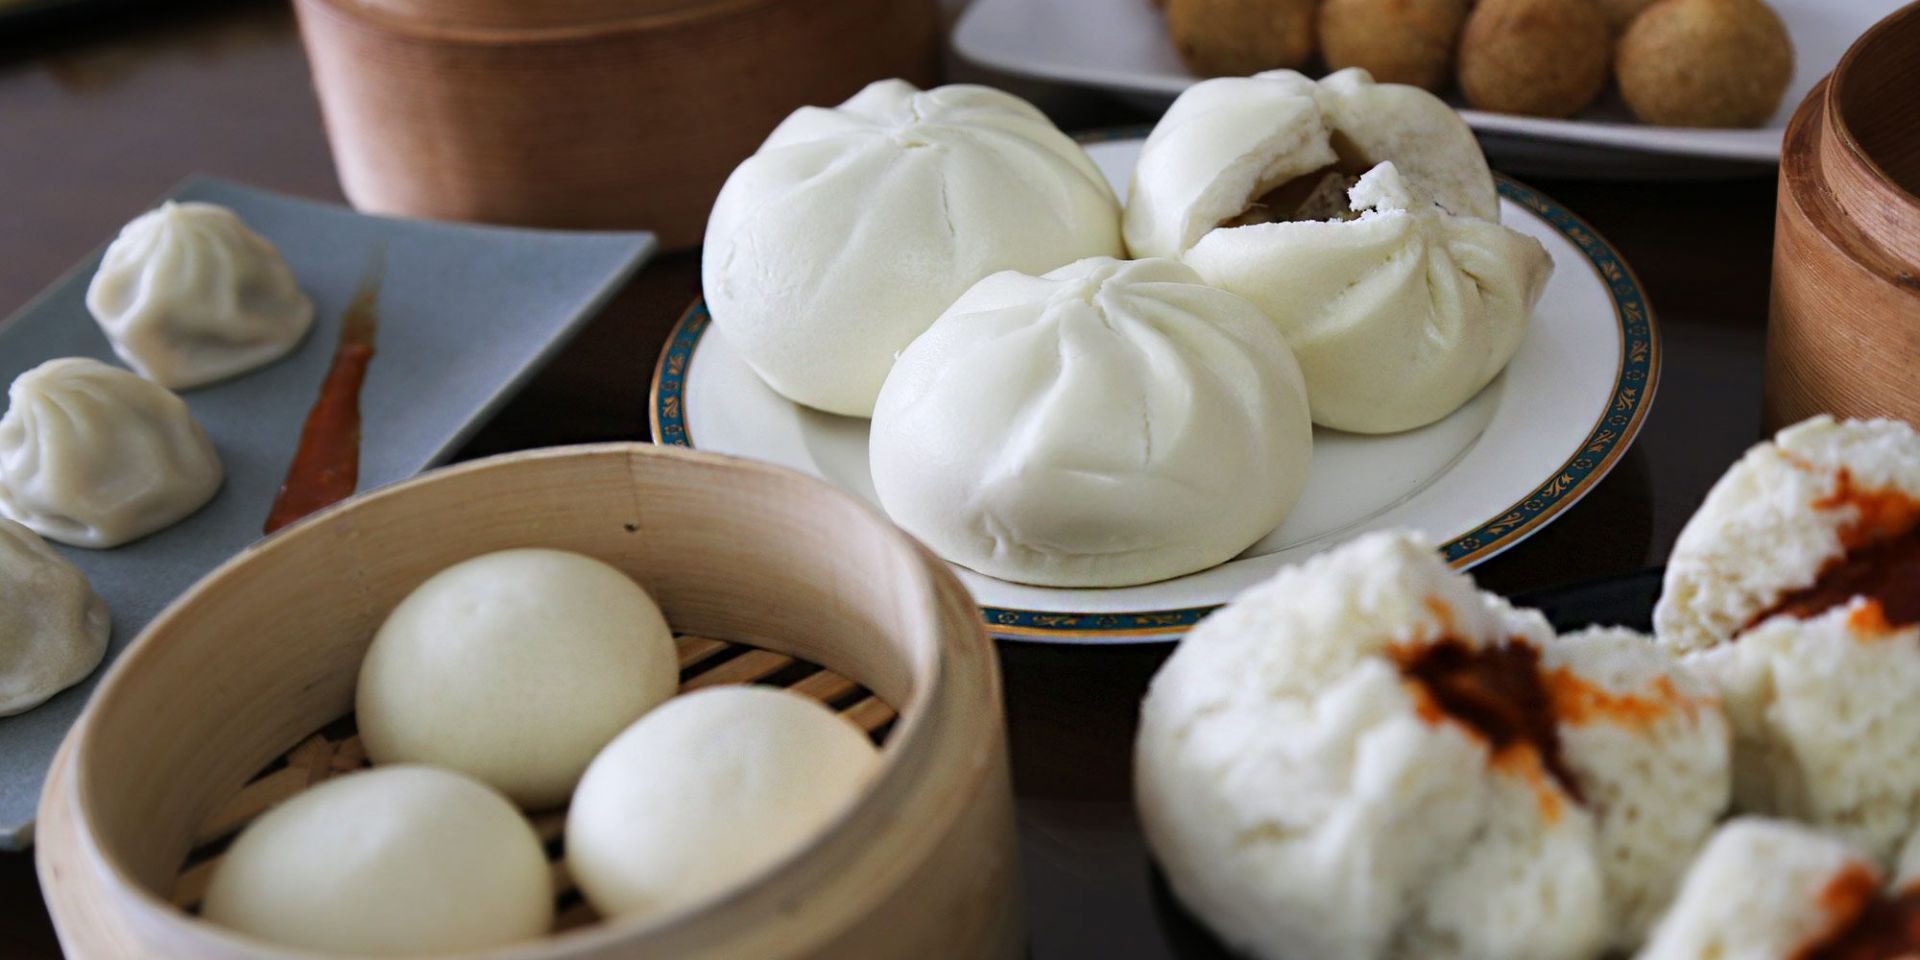 ANKO FOOD MACHINE-बाओज़ी, चीनी व्यंजन का एक महान पारंपरिक व्यंजन